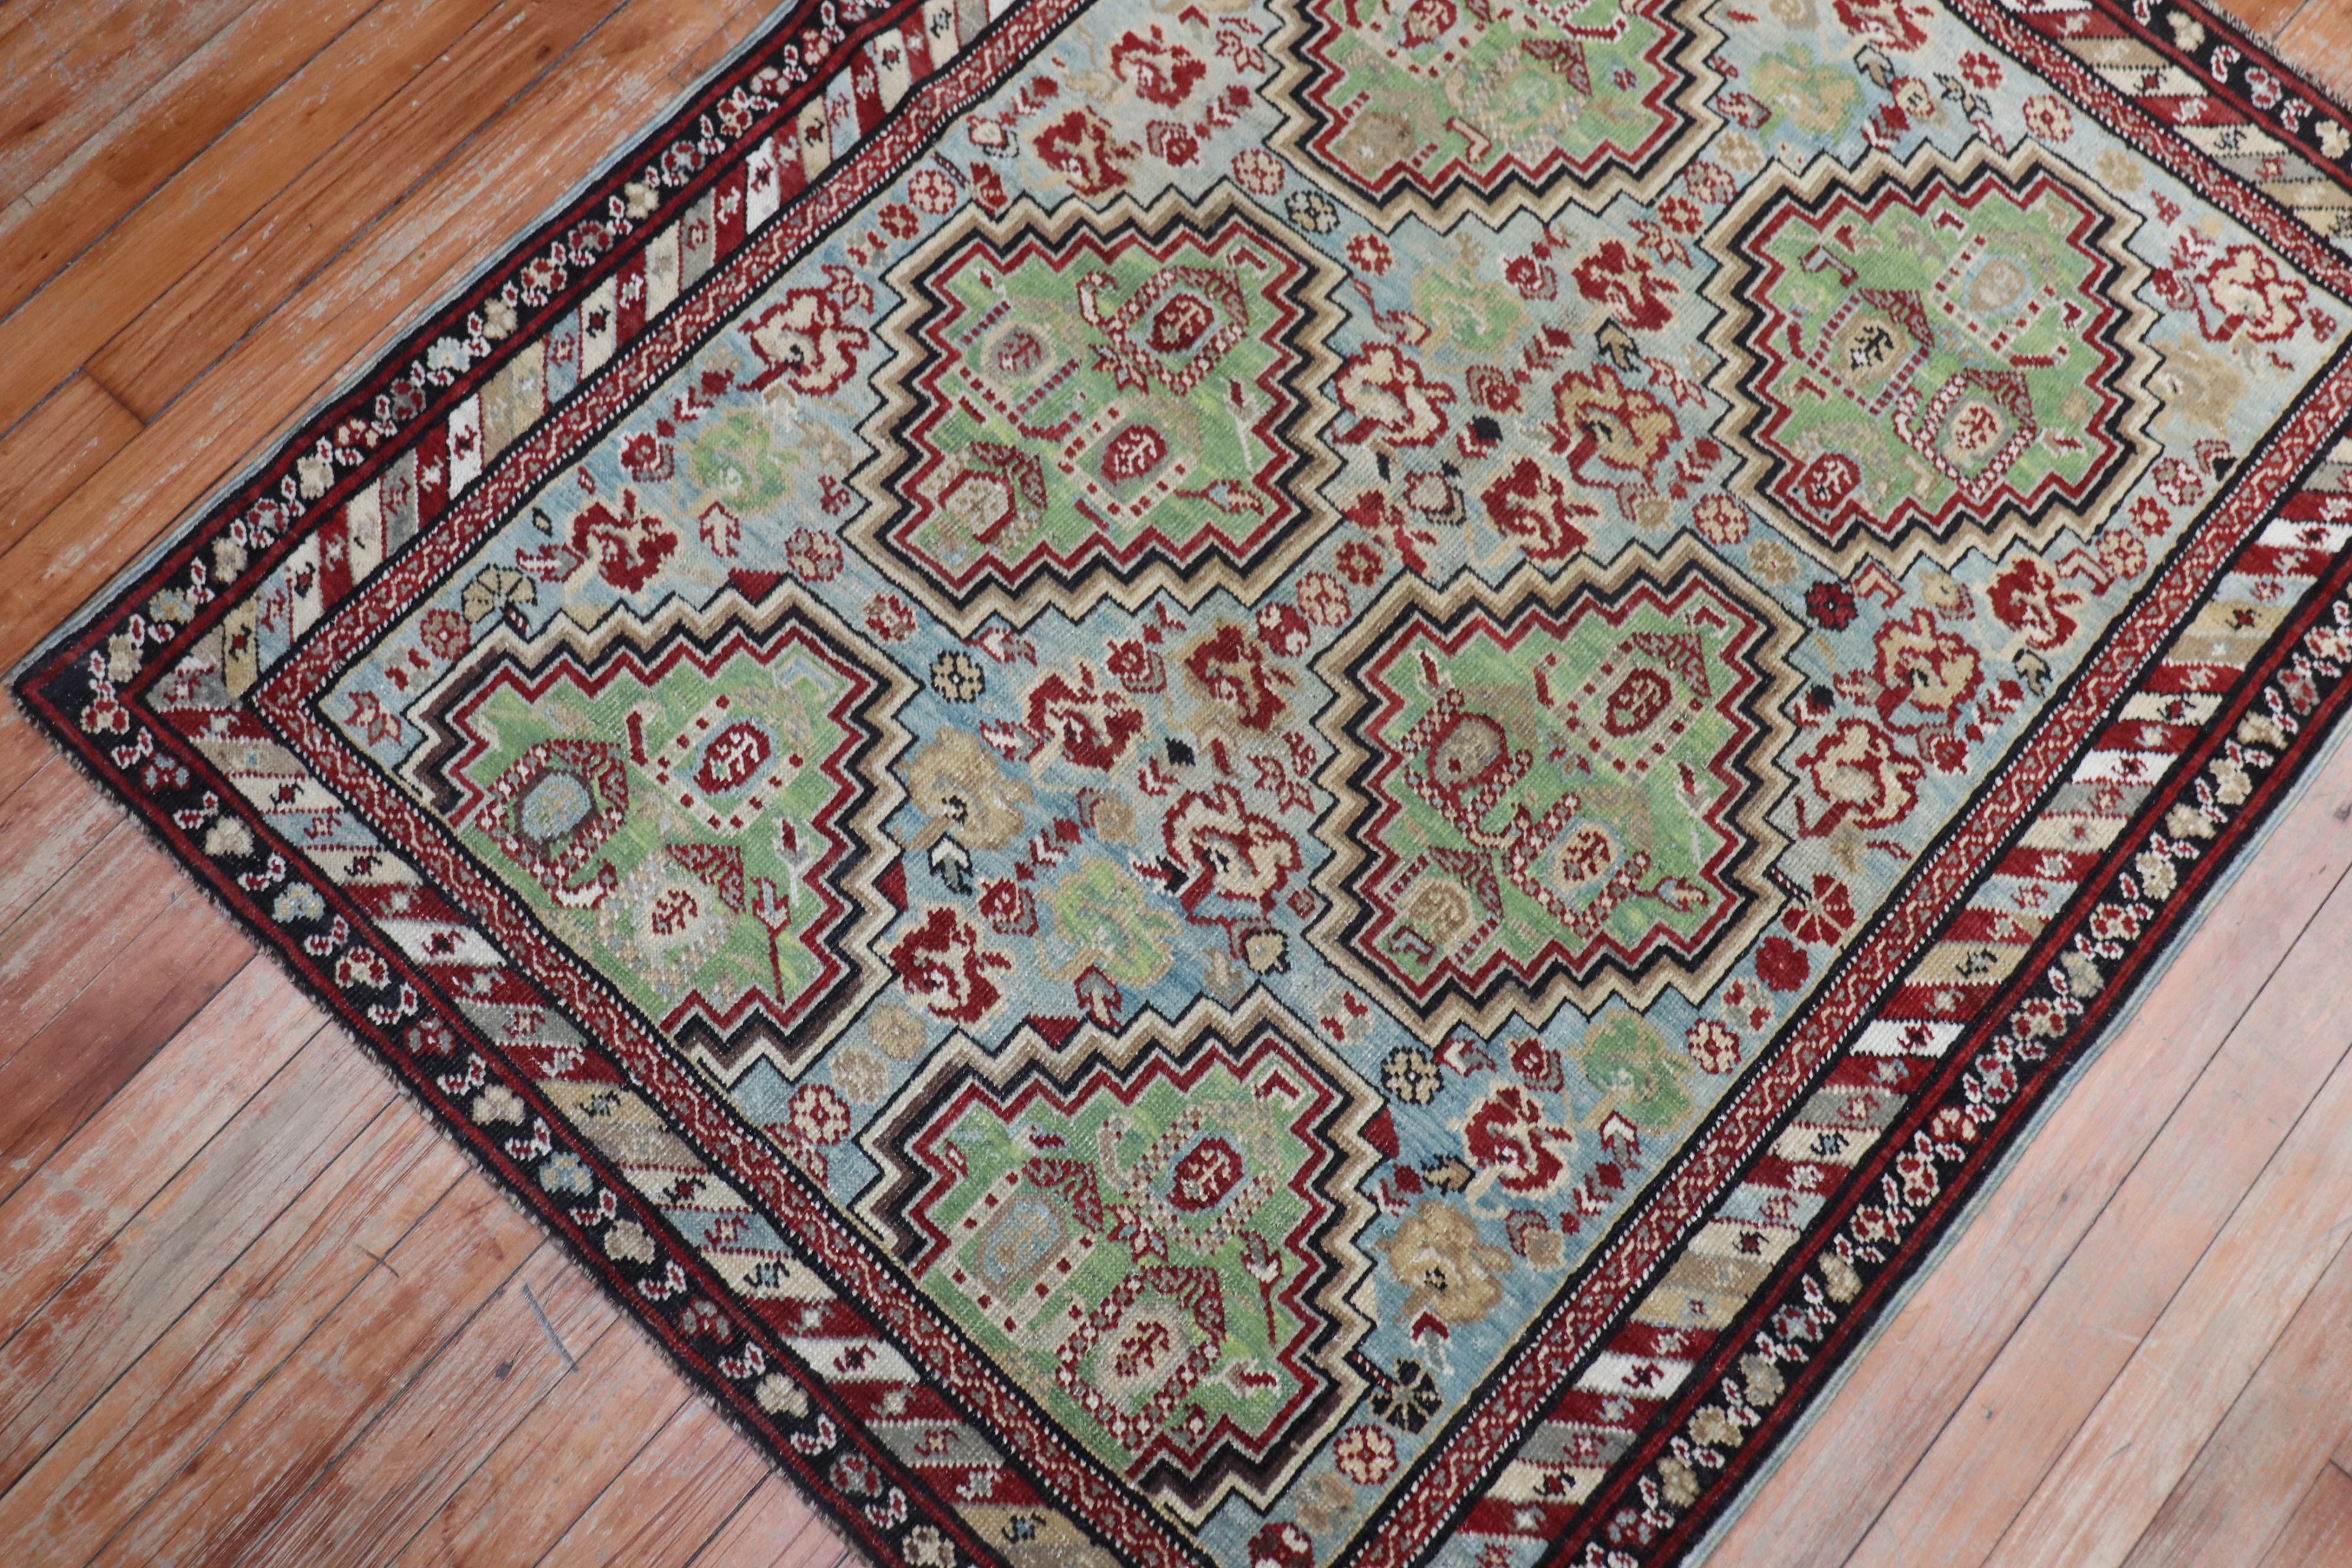 Antiker kaukasischer Baku-Khila-Teppich aus dem späten 19. Jahrhundert mit 6 hellgrünen Medaillons (2 der Medaillons sind halb gefüllt) auf einem hellblauen Feld, umgeben von einer mehrbändigen Bordüre

Maße: 3'4